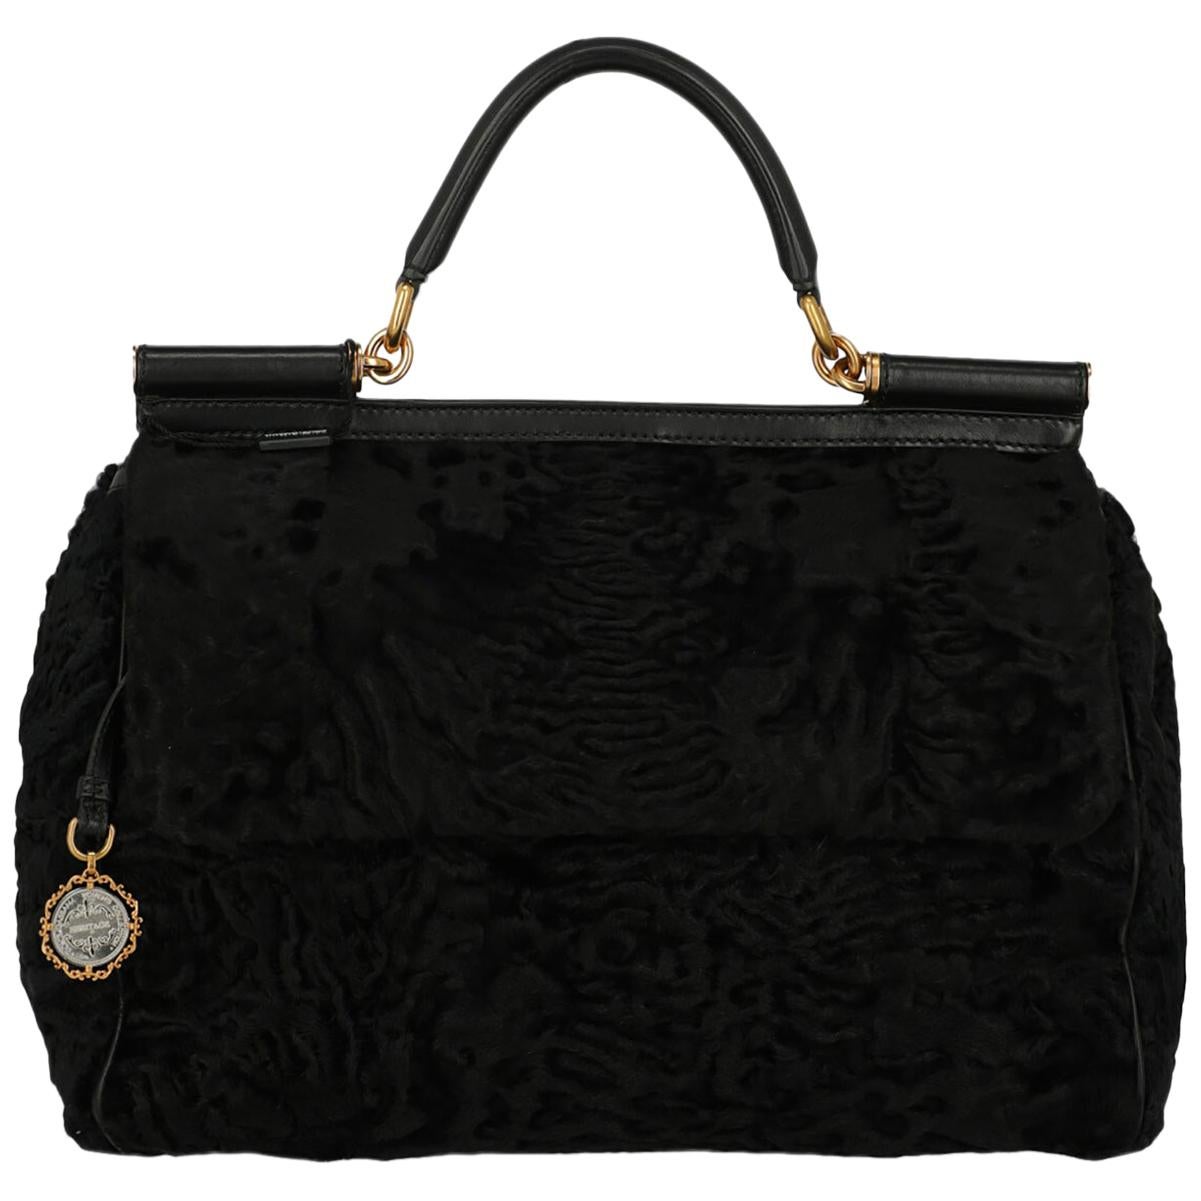 Dolce & Gabbana Woman Tote bag Black 